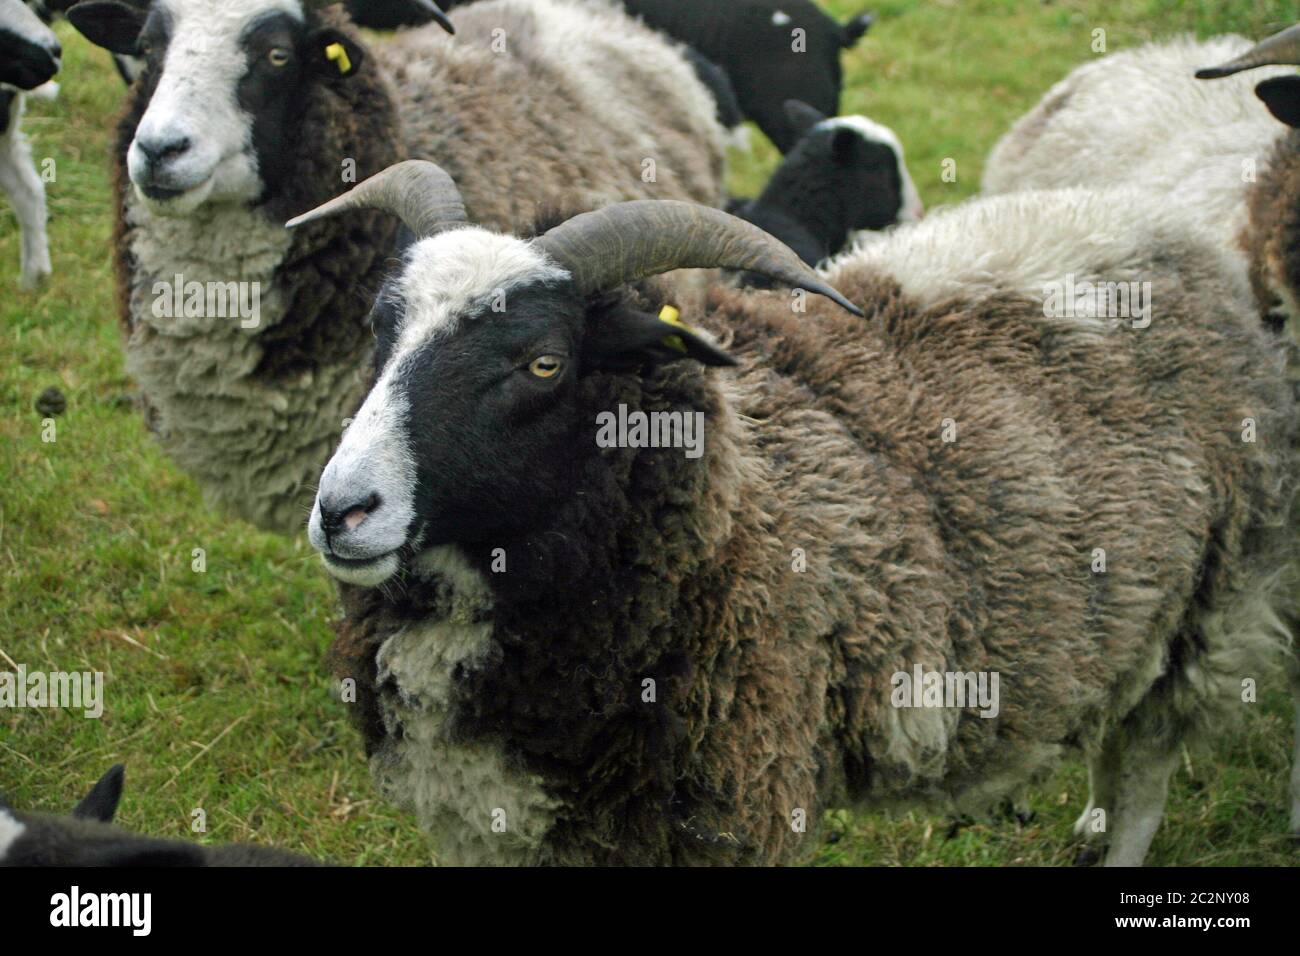 Rare pecore di razza con corna e un cappotto nero, bianco e marrone spesso. Probabilmente razza di pecora Jacobs. Foto Stock